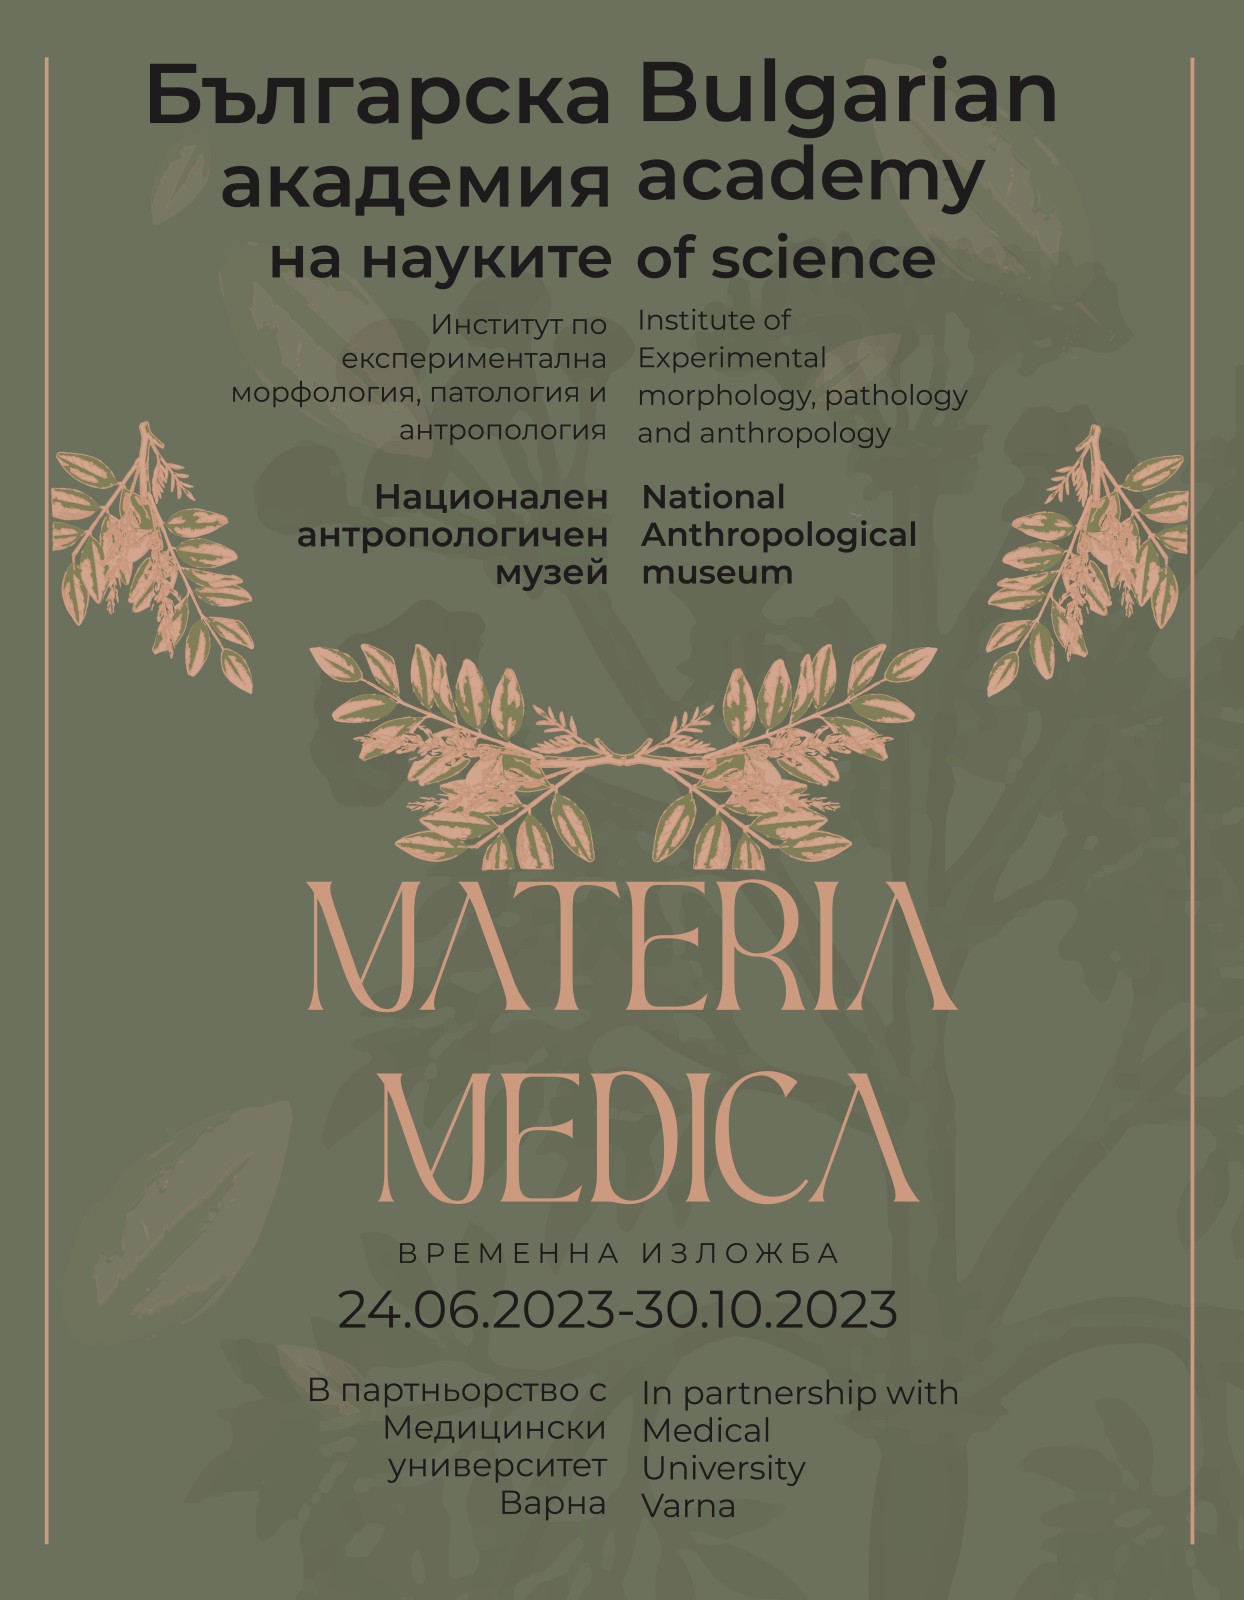 Изложба MATERIA MEDICA